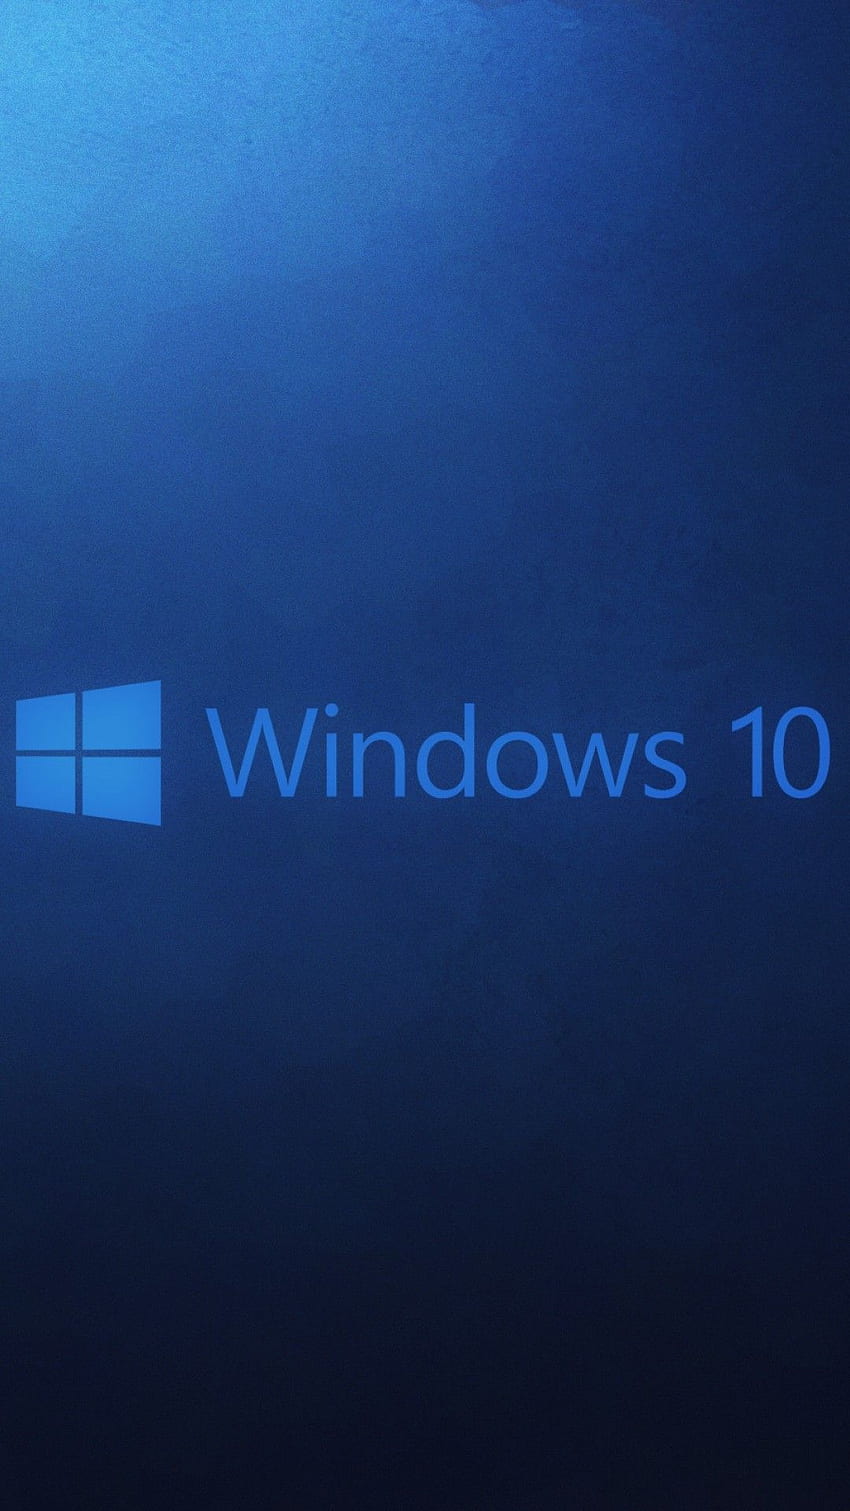 Điểm qua những khác biệt của Windows 10 so với Windows 8.1 | Báo Dân trí